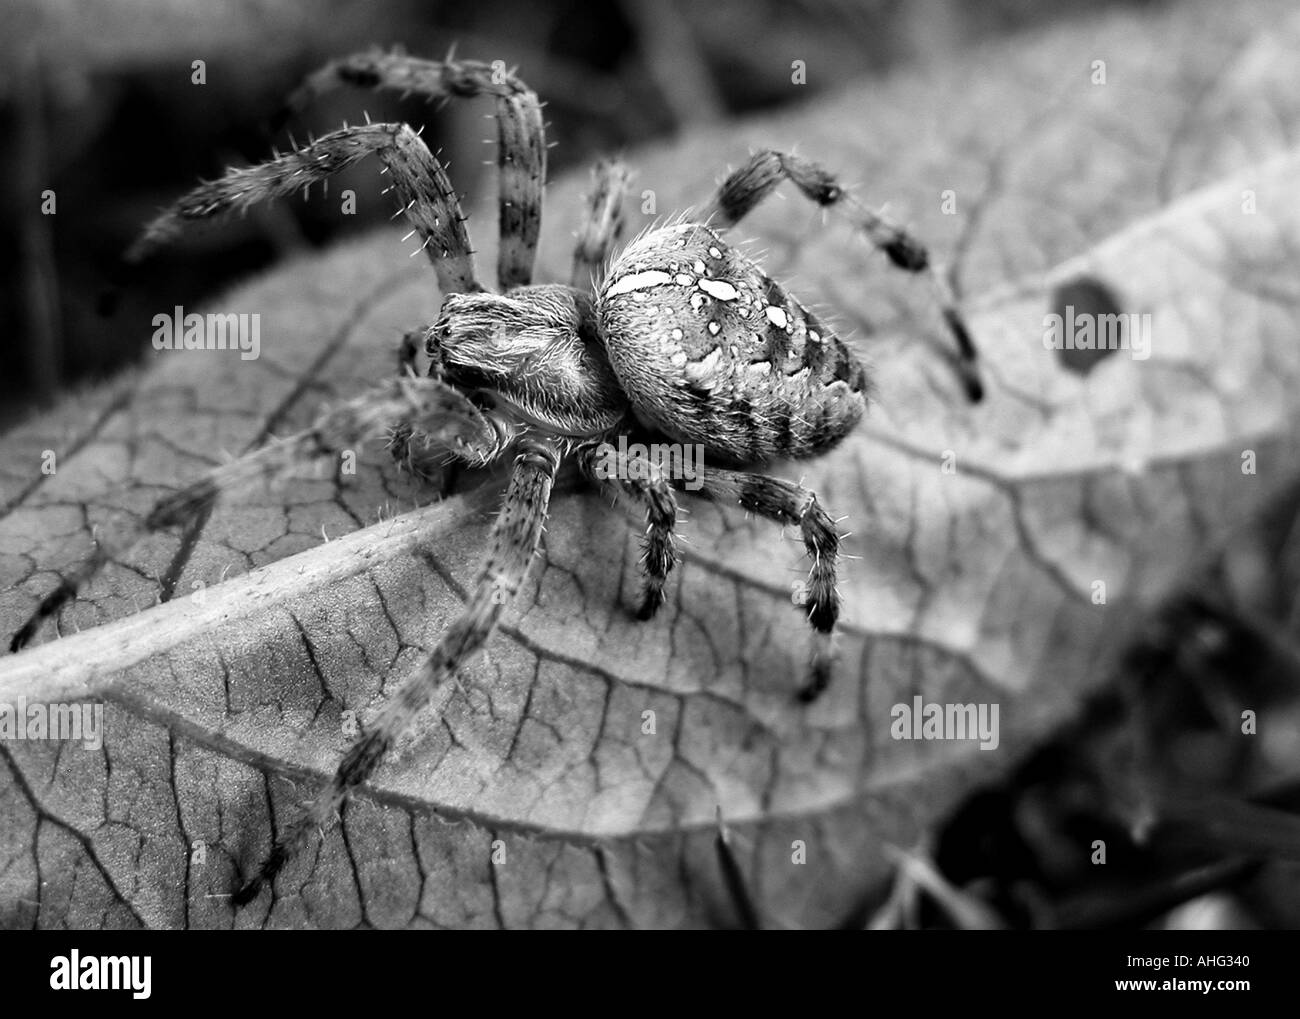 Spider Stock Photo